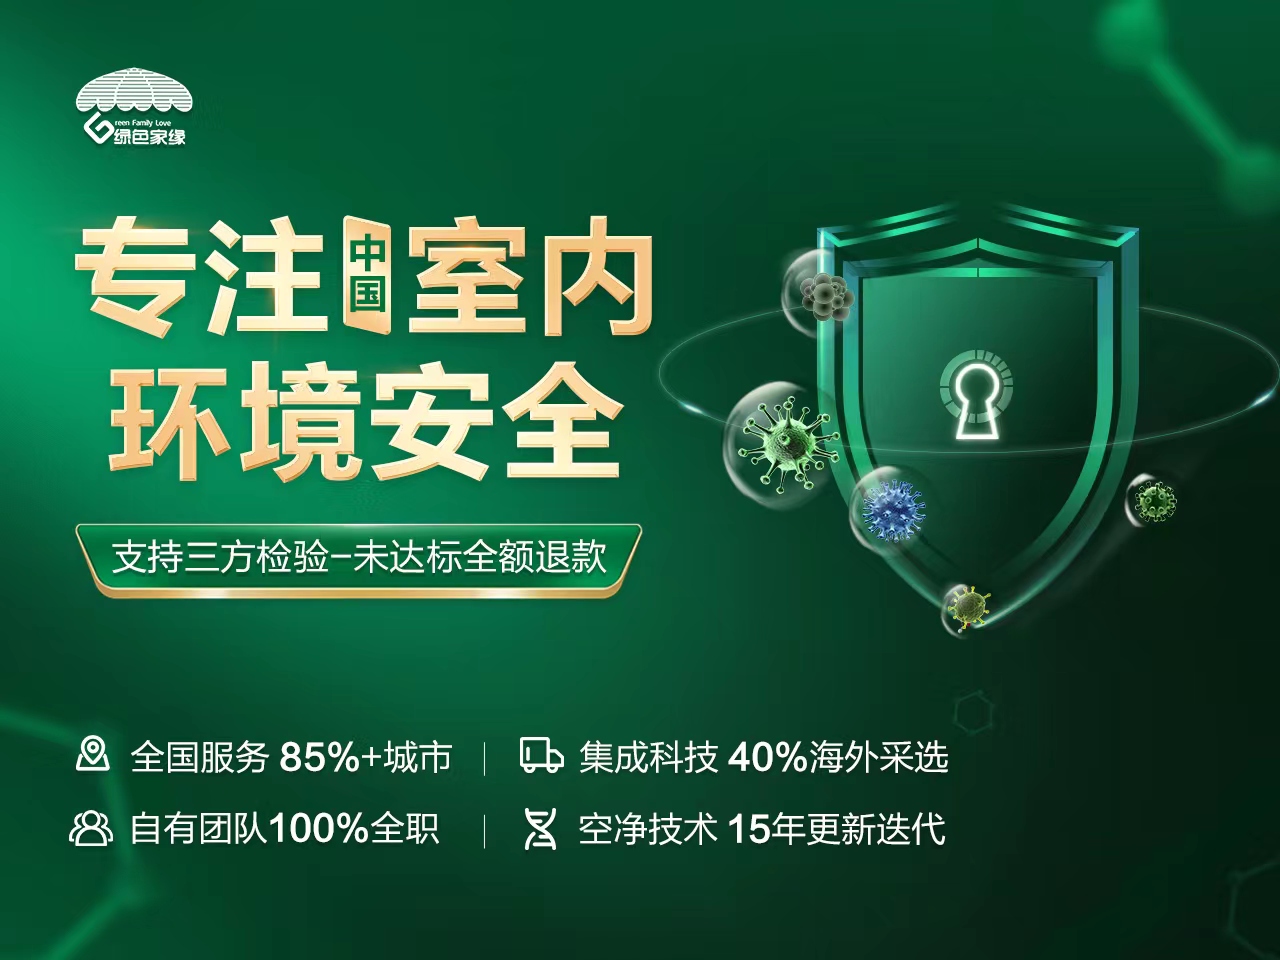 广州绿色家缘除甲醛公司用科技守护呼吸安全